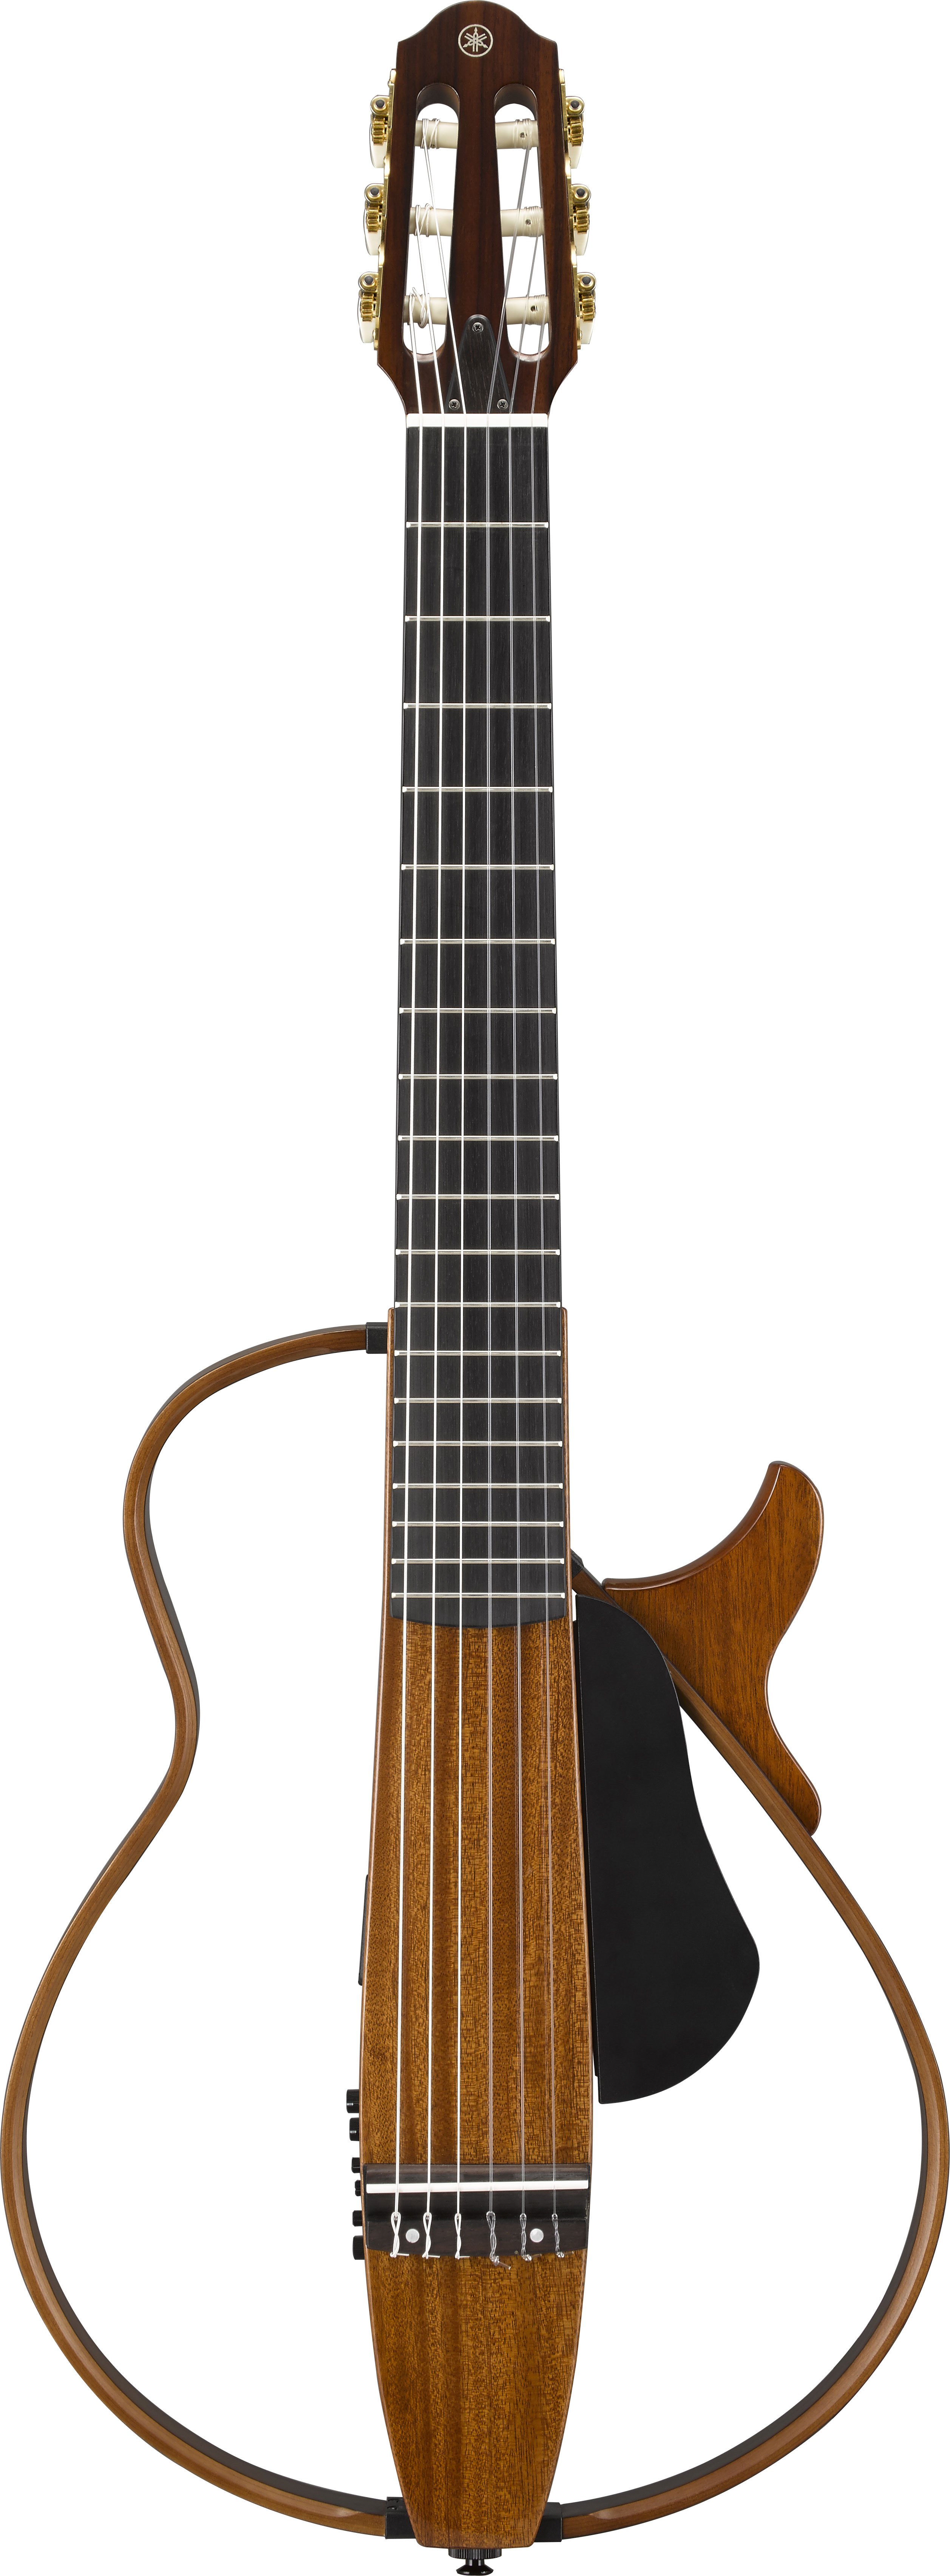 SLG200系列- 概述- 靜音吉他- 吉他、貝斯和音箱- 樂器- 產品- Yamaha 